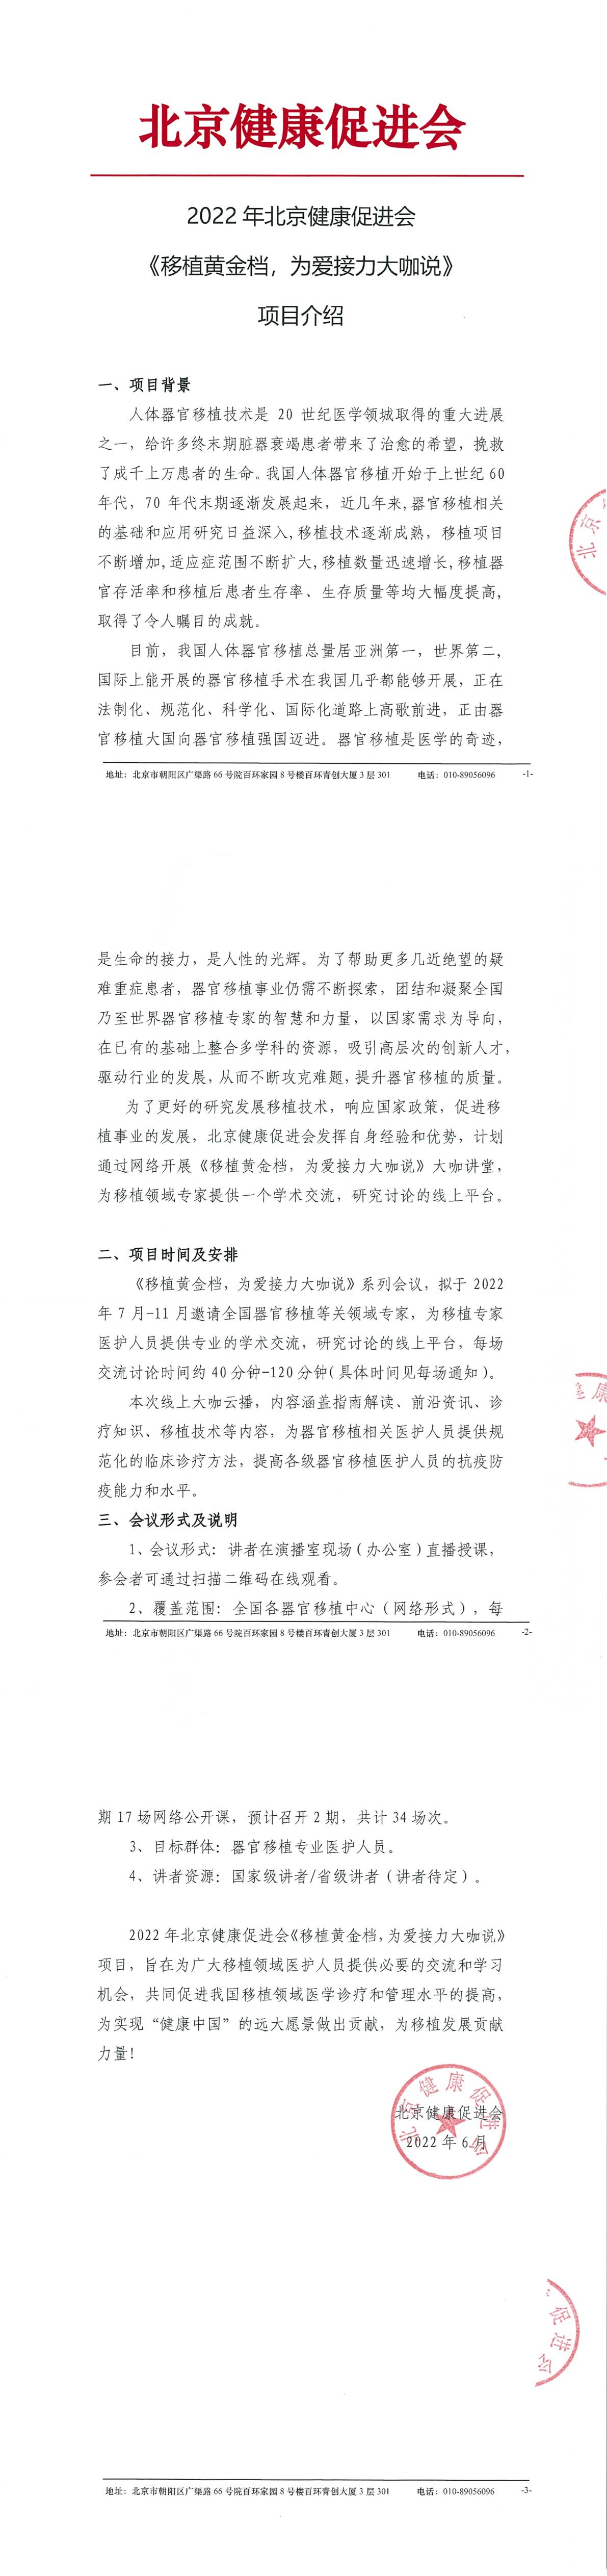 2022年北京健康促进会《移植黄金档，为爱接力大咖说》--项目介绍-1.jpg